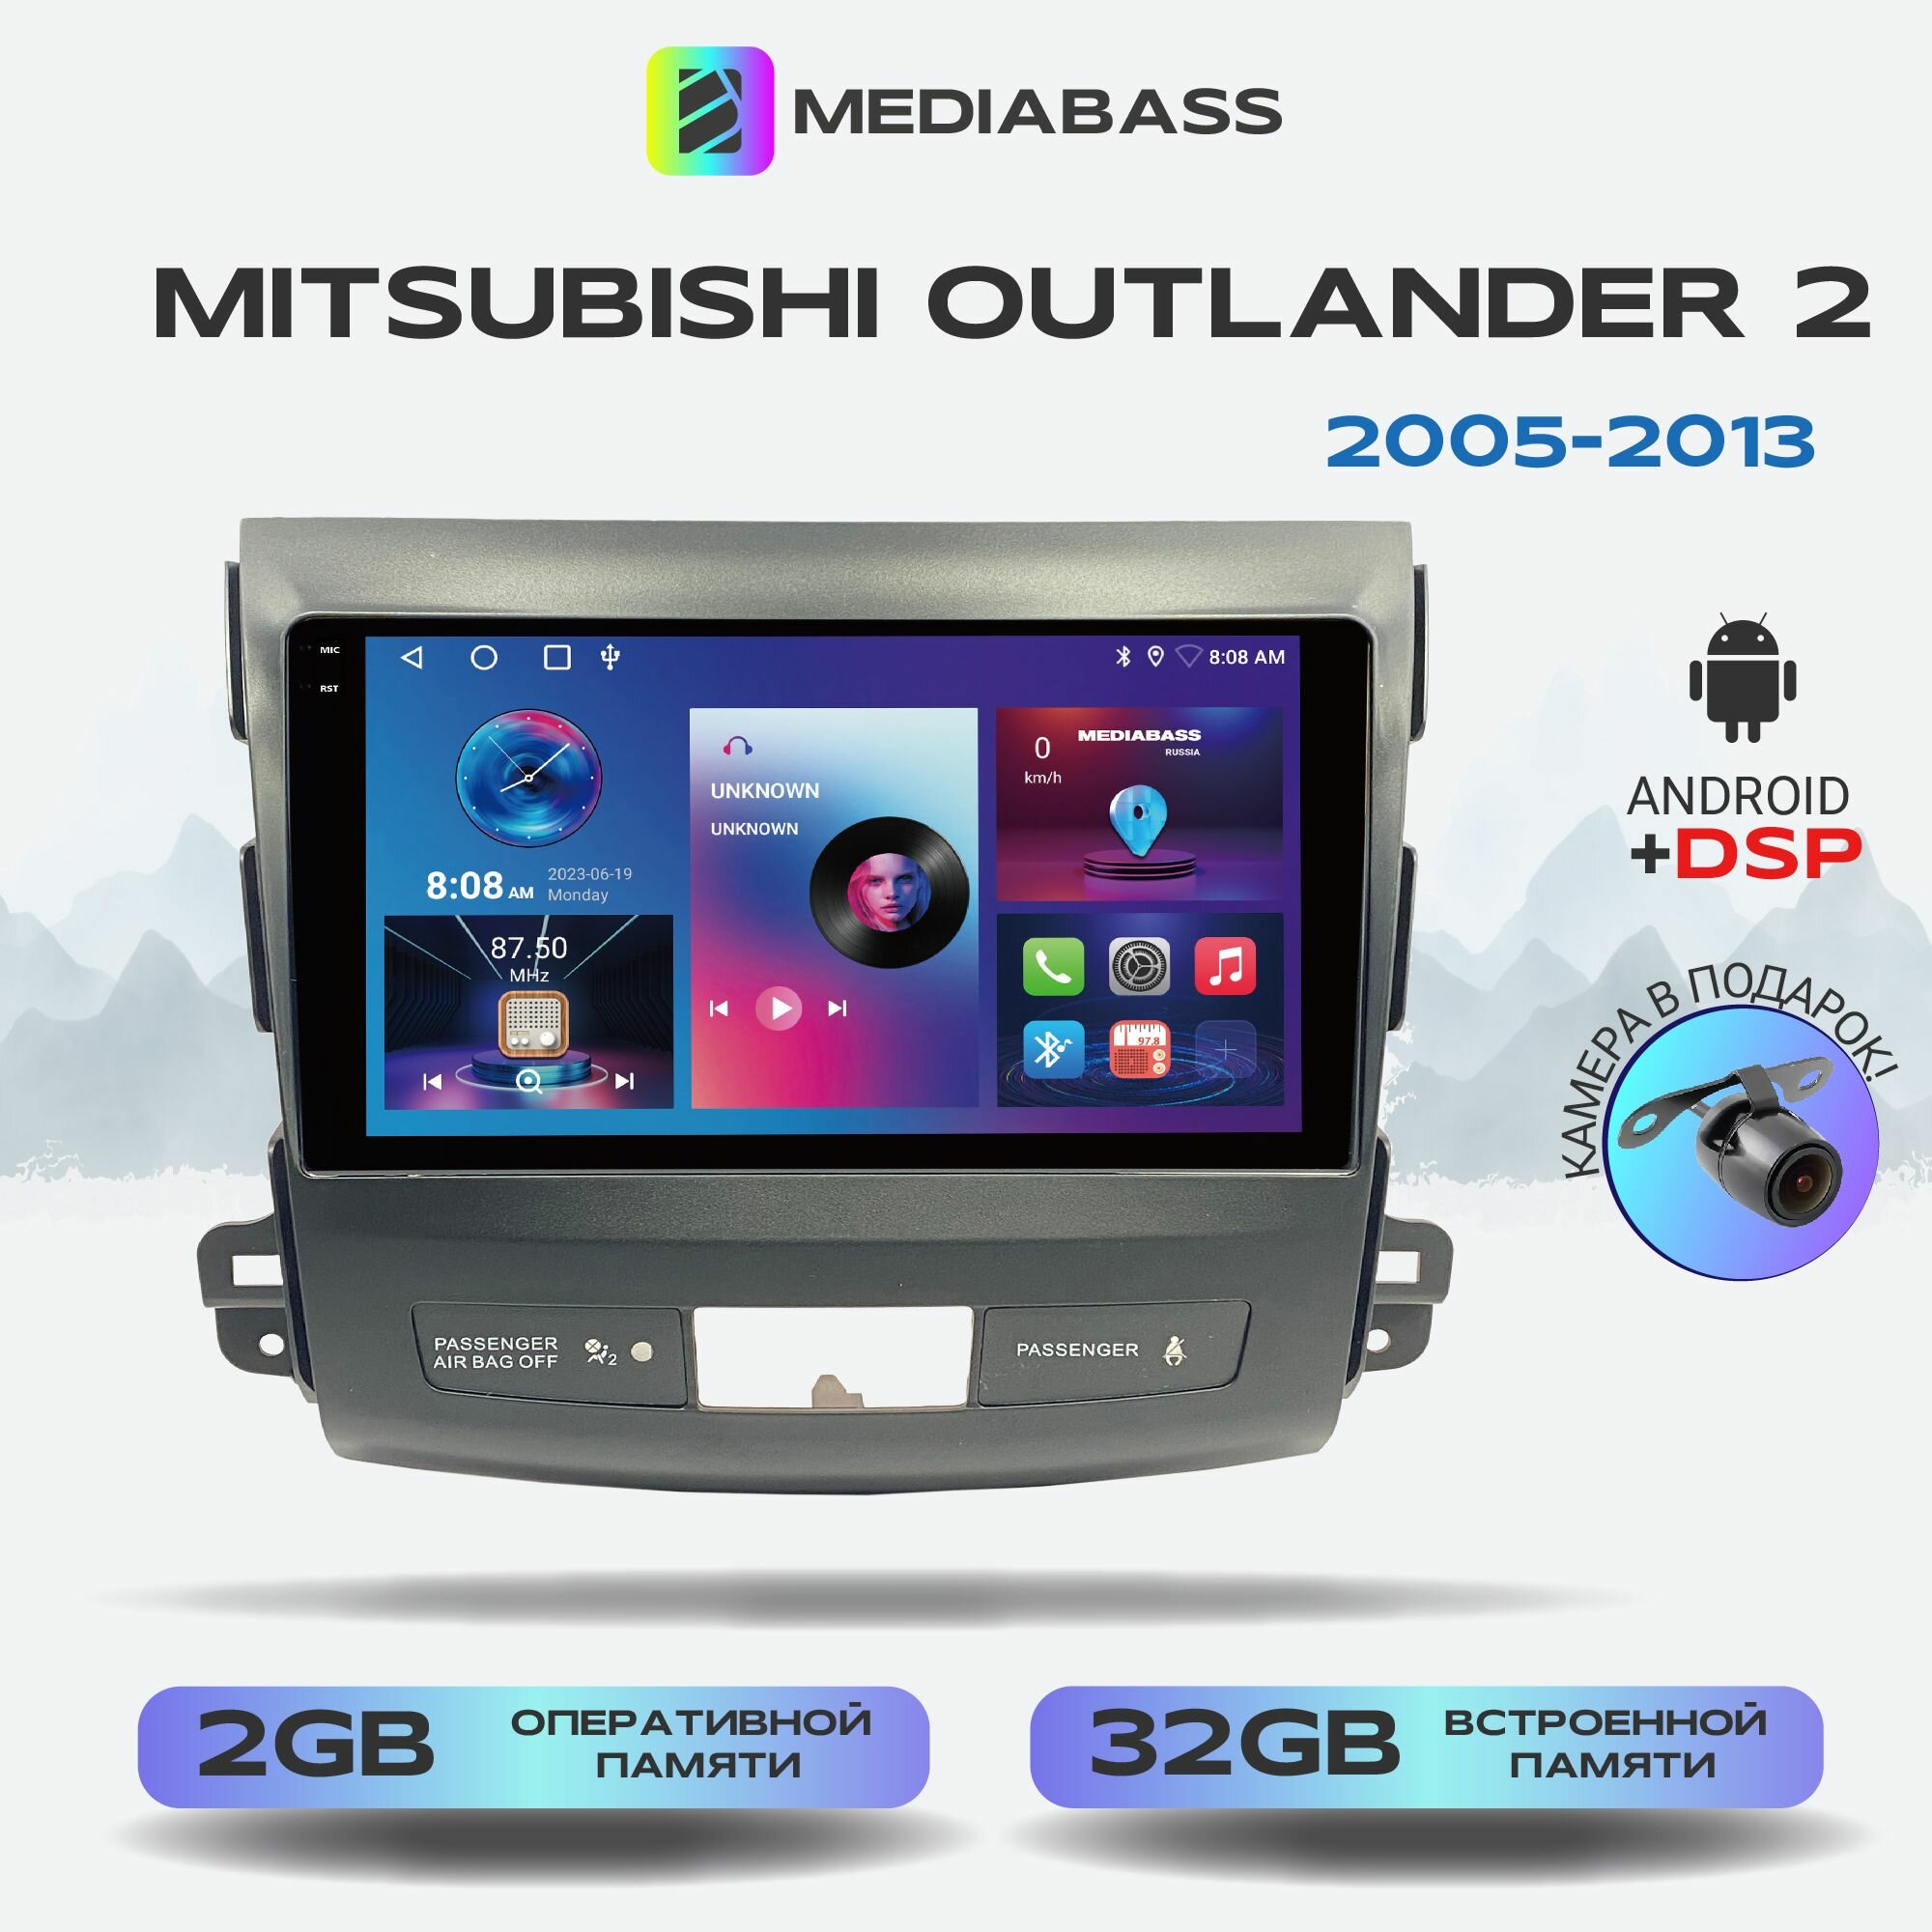 Автомагнитола Mediabass PRO Mitsubishi Outlander 2, 2 рест. 2005-2013, Android 12, 2/32ГБ / Митсубиши Аутлендер XL, 4-ядерный процессор, QLED экран с разрешением 1280*720, DSP, чип-усилитель YD7388